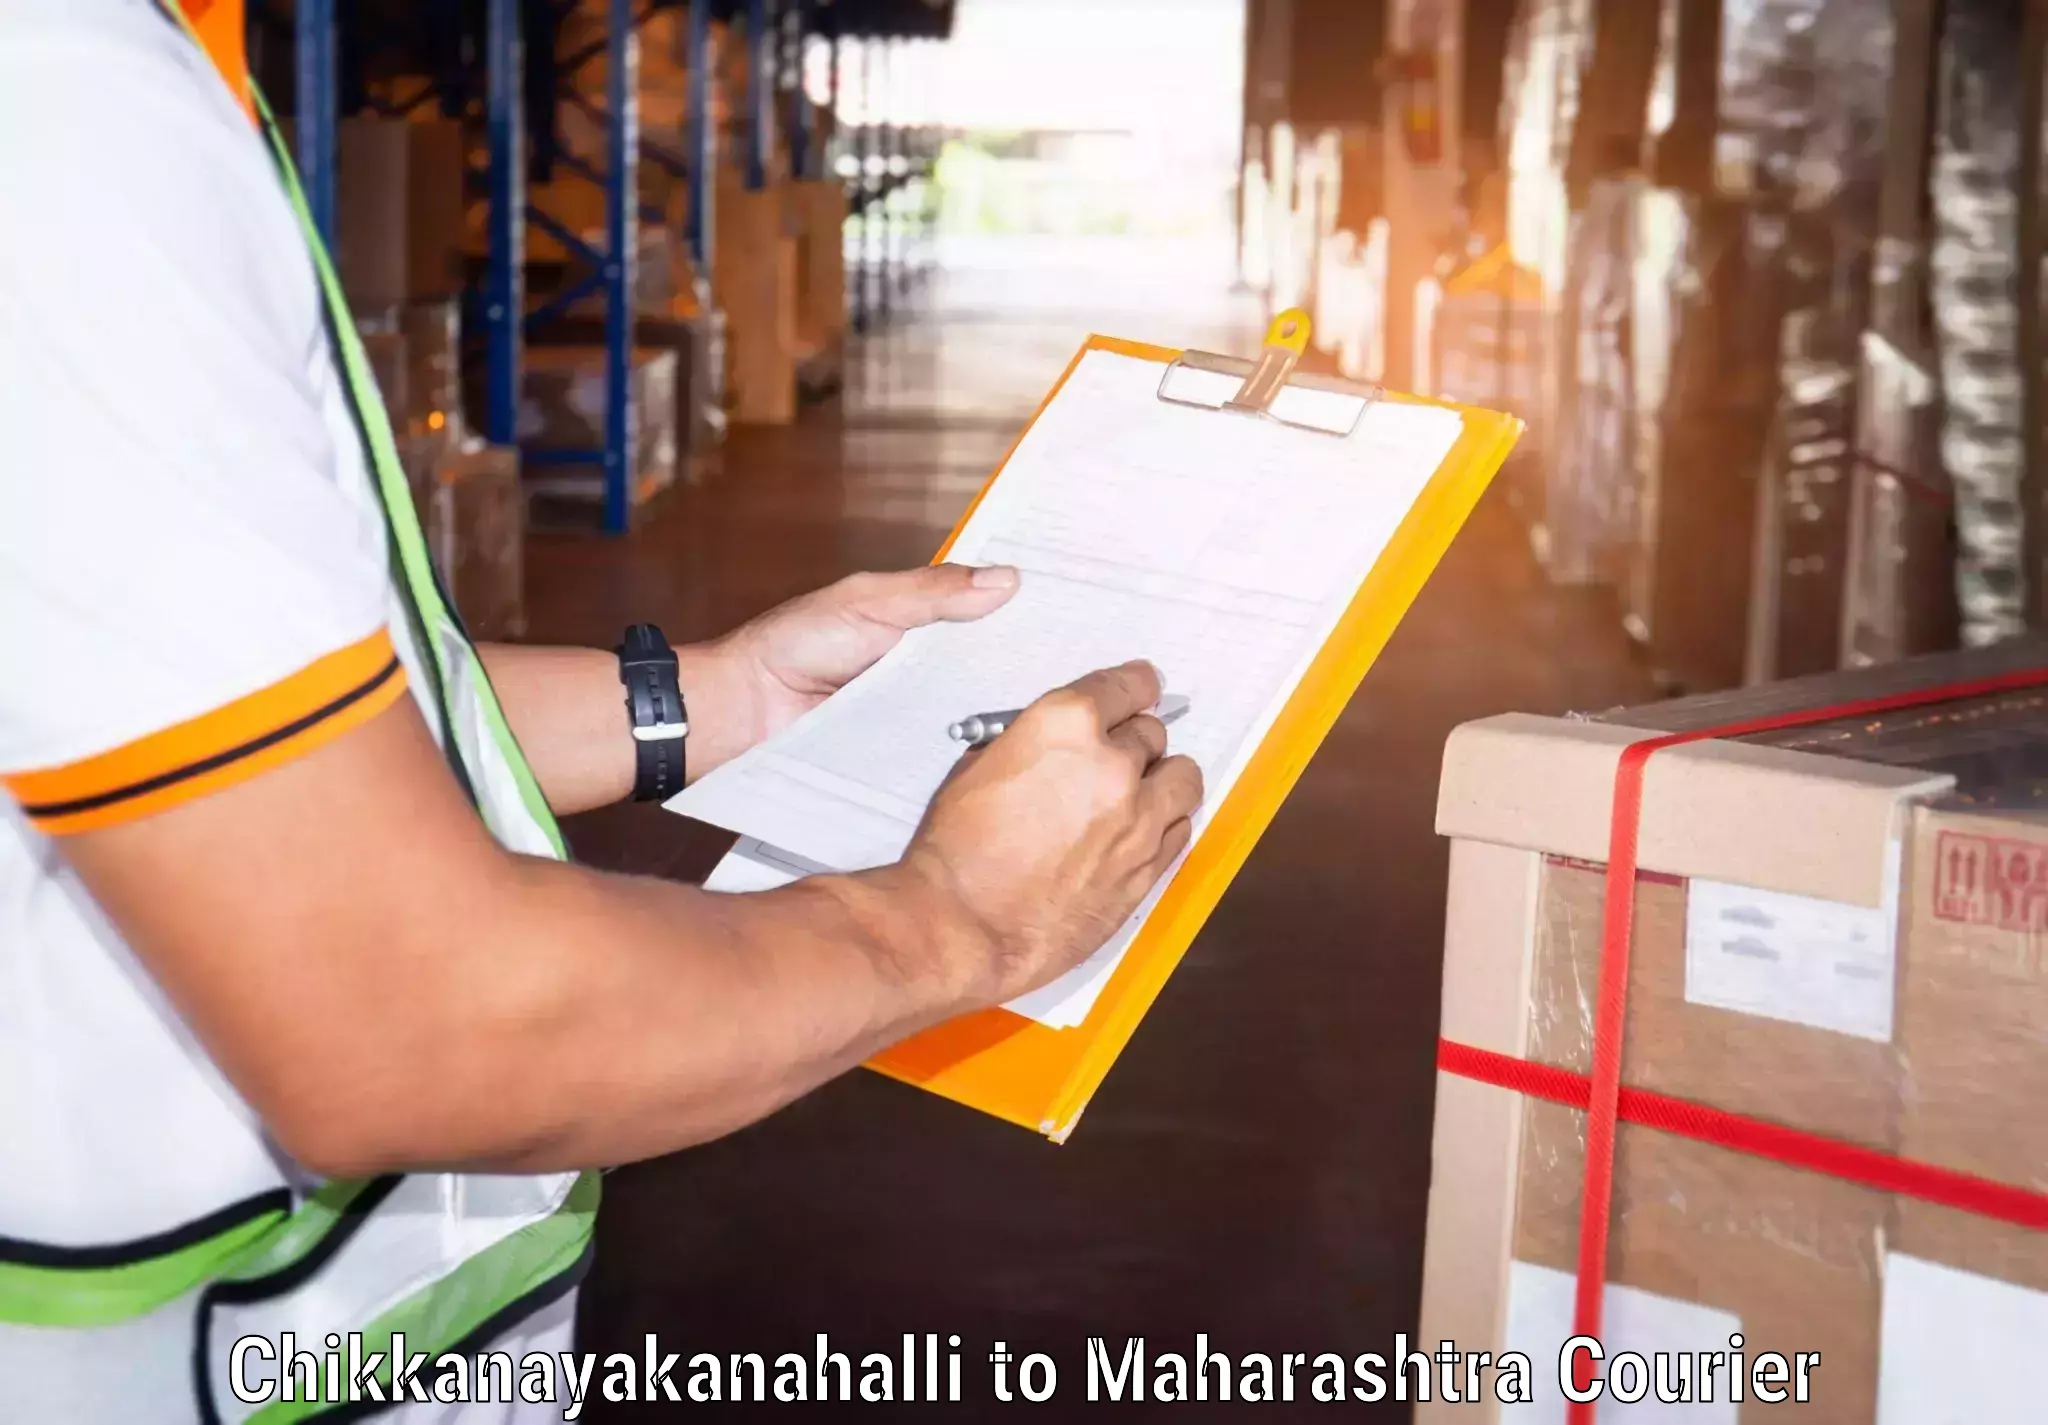 International parcel service Chikkanayakanahalli to Dongarkinhi